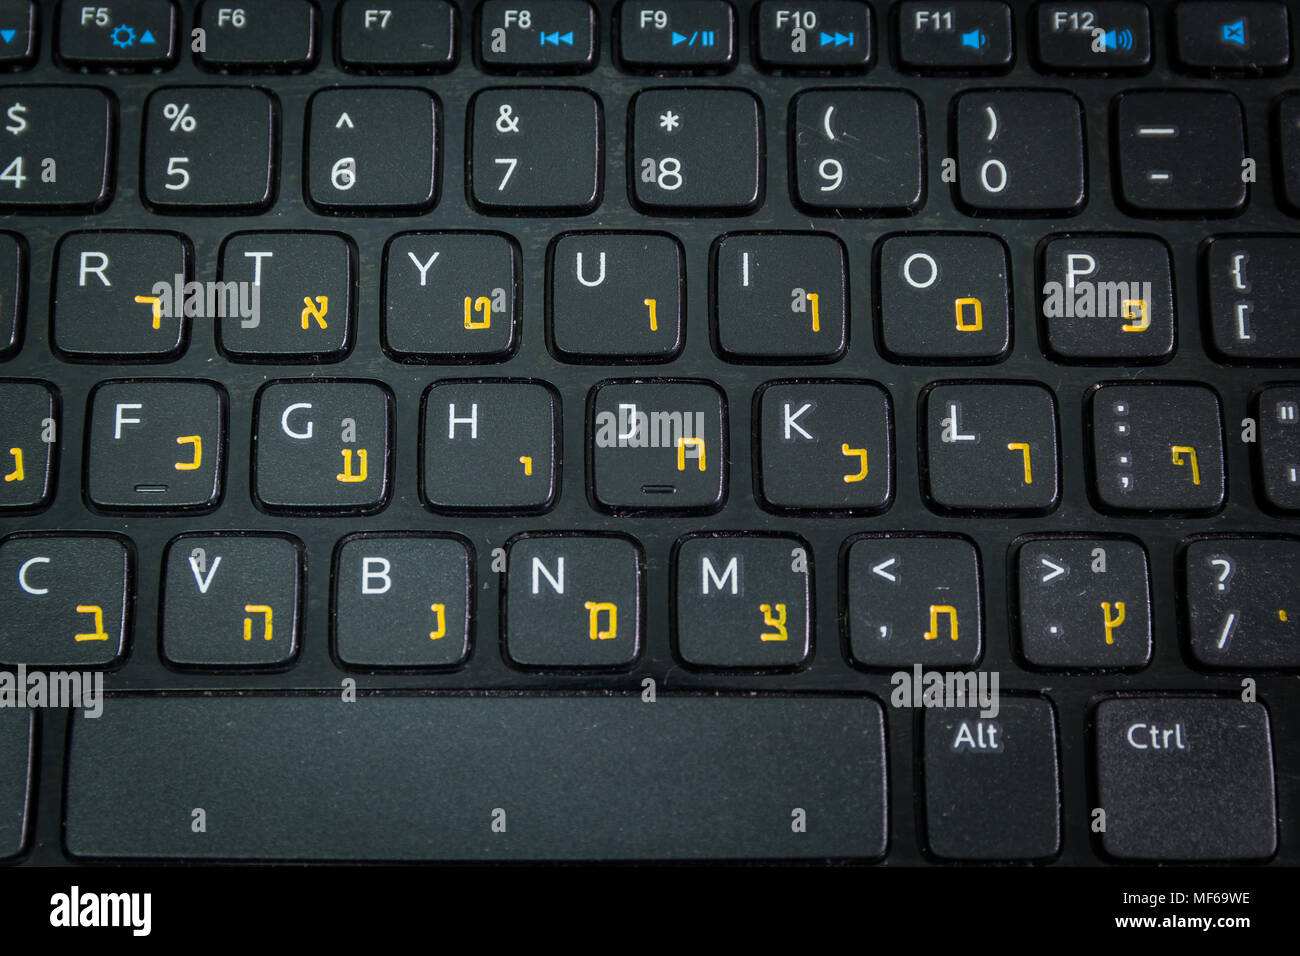 Clavier avec lettres en hébreu et en anglais - clavier ordinateur portable  - Vue de dessus - Close up - atmosphère sombre Photo Stock - Alamy